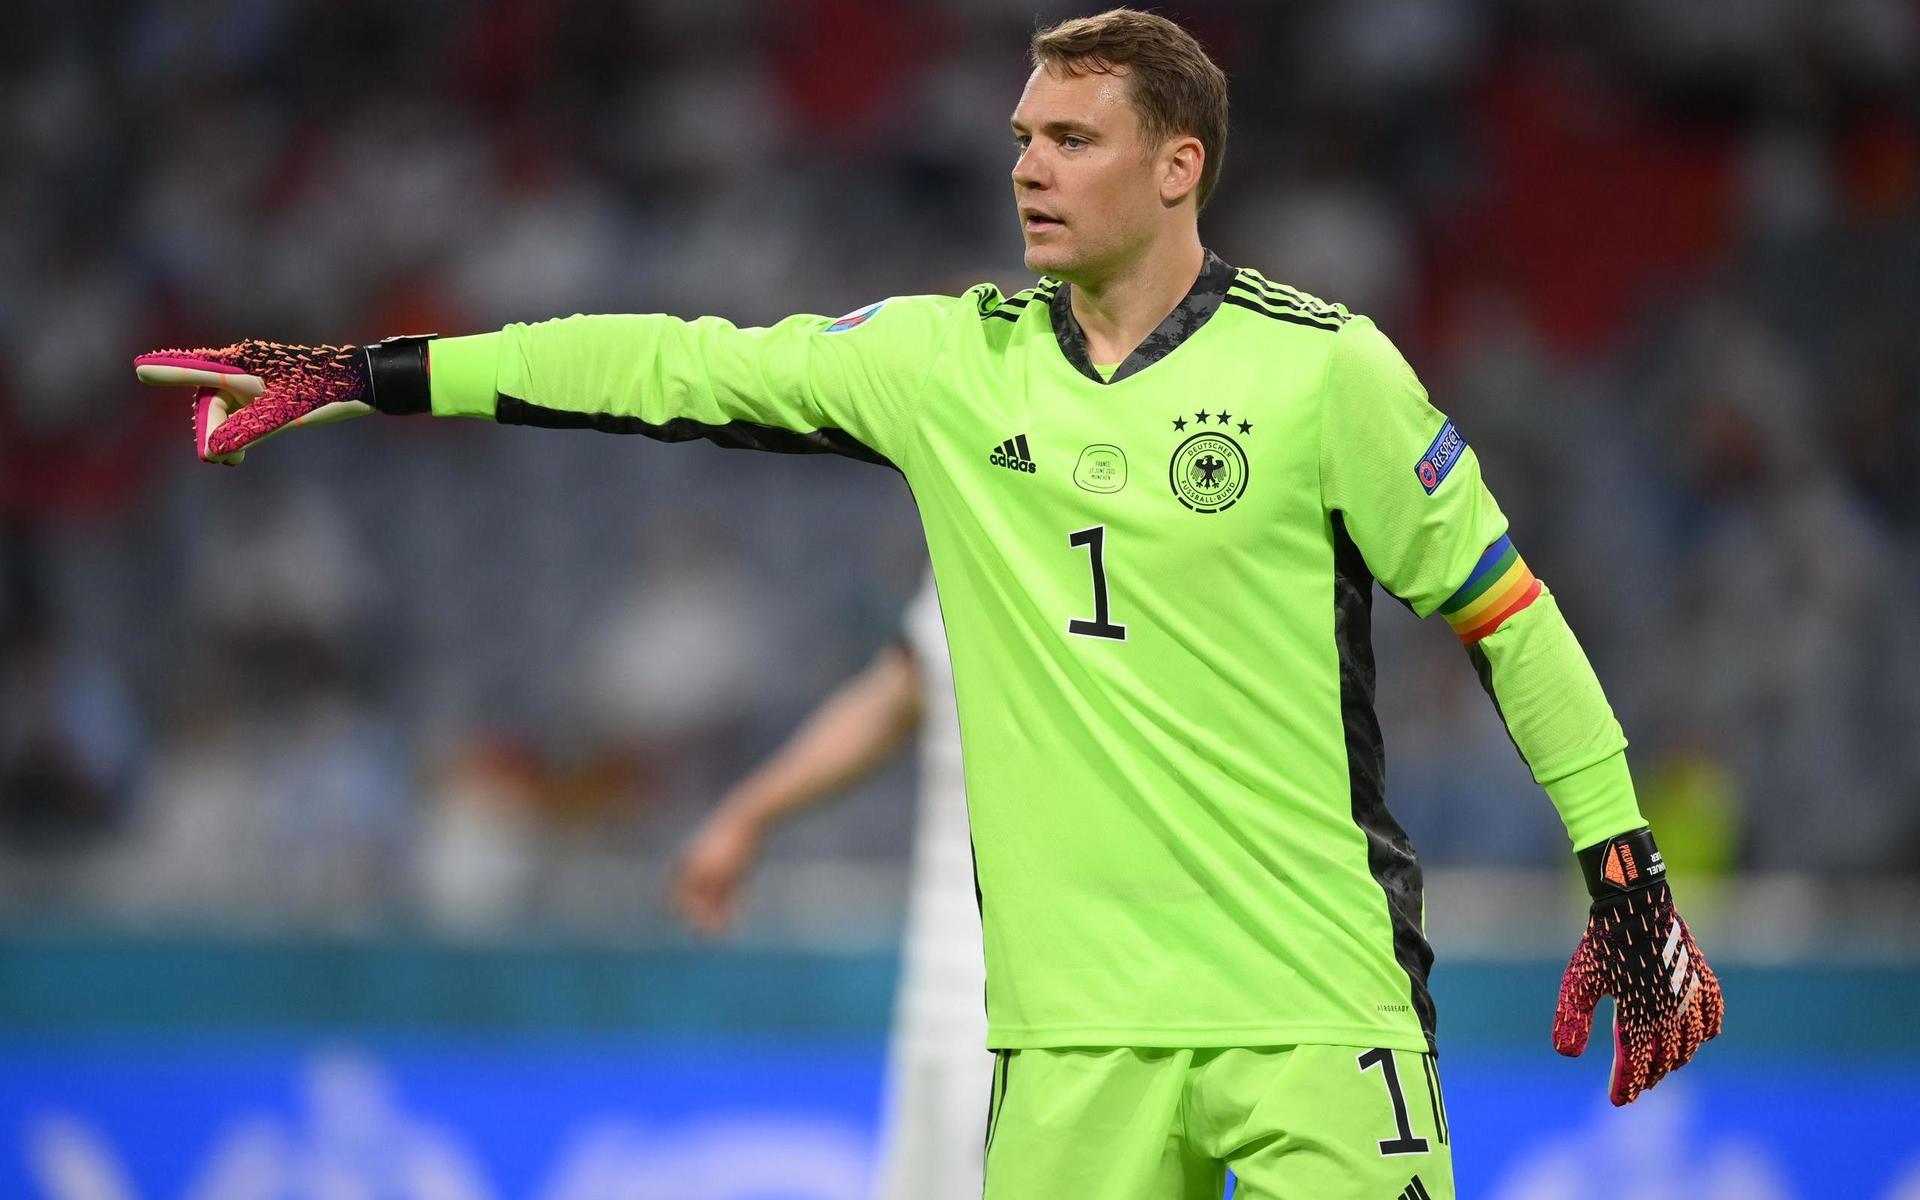 Tidigare under mästerskapet granskade Uefa Tyskland som hade en regnbågsfärgad kaptensbindel. 